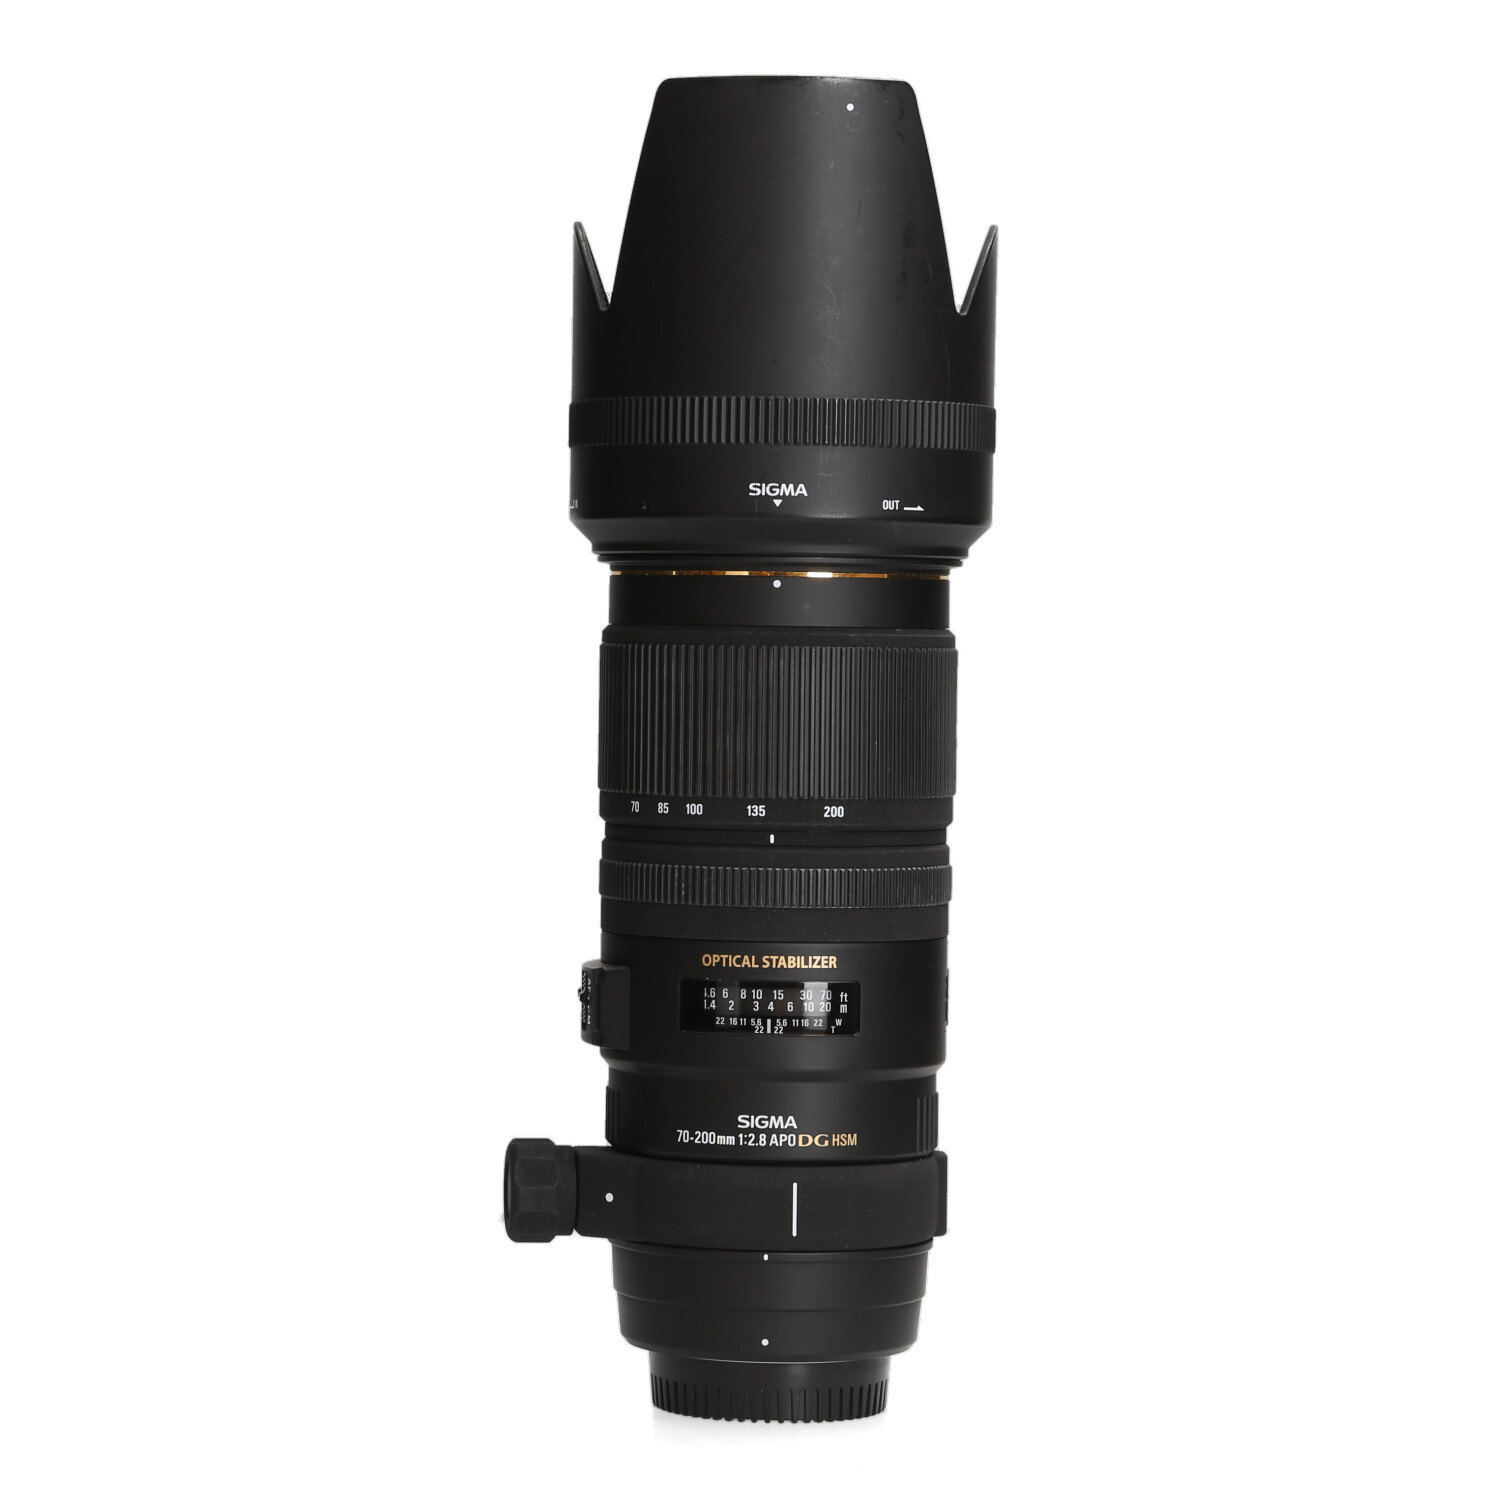 Sigma Sigma 70-200mm 2.8 APO DG OS HSM - Nikon